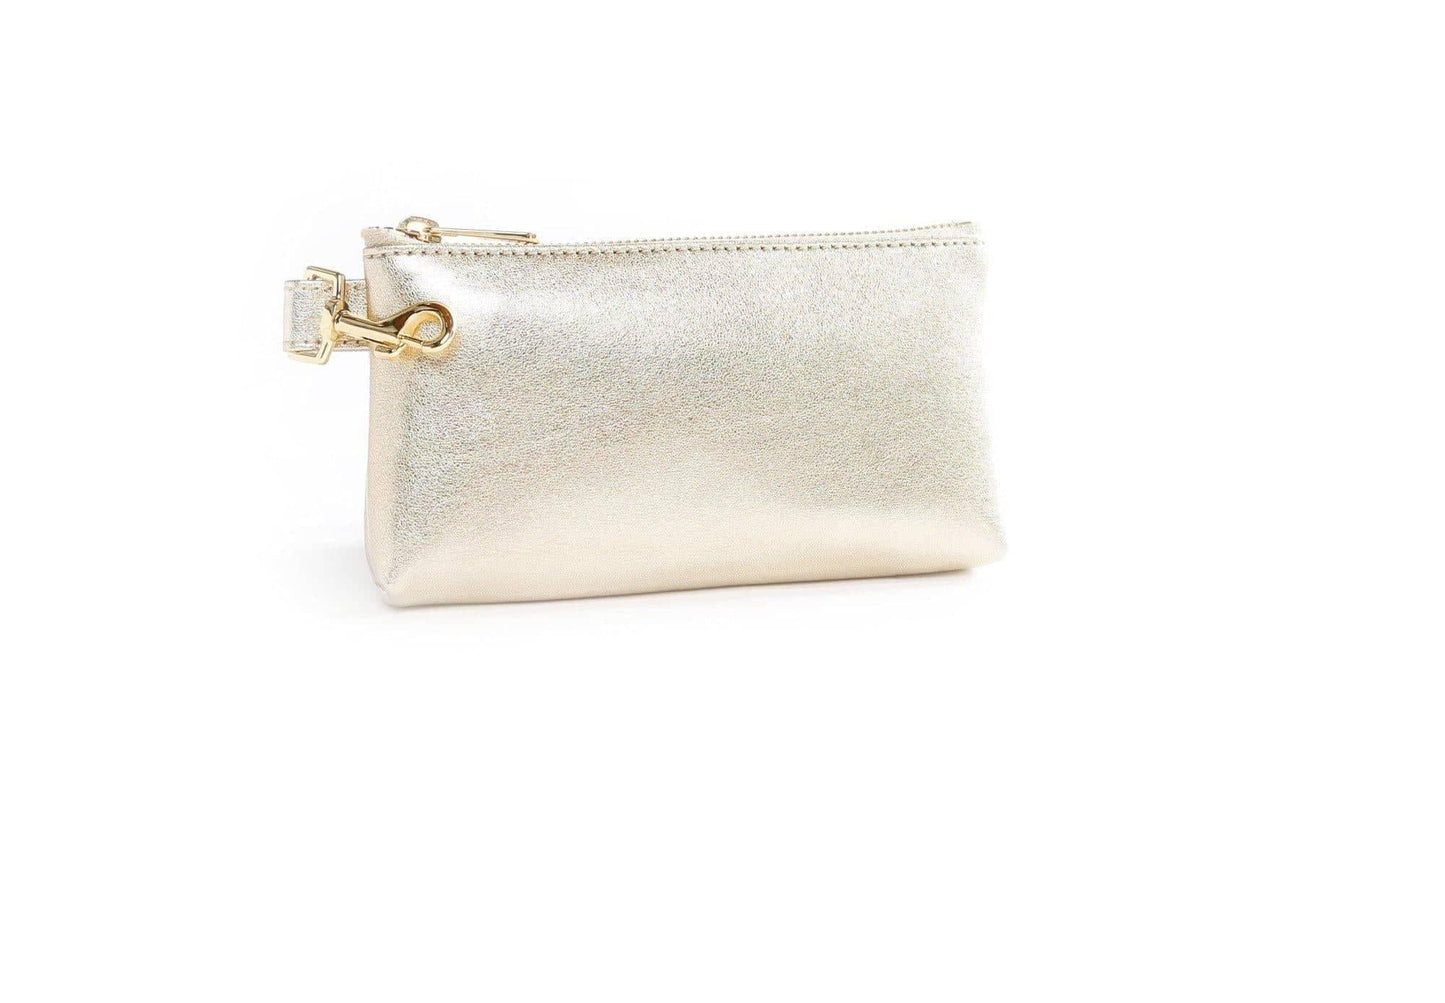 Rich Gold Tone Premium Leather Wristlet Bag